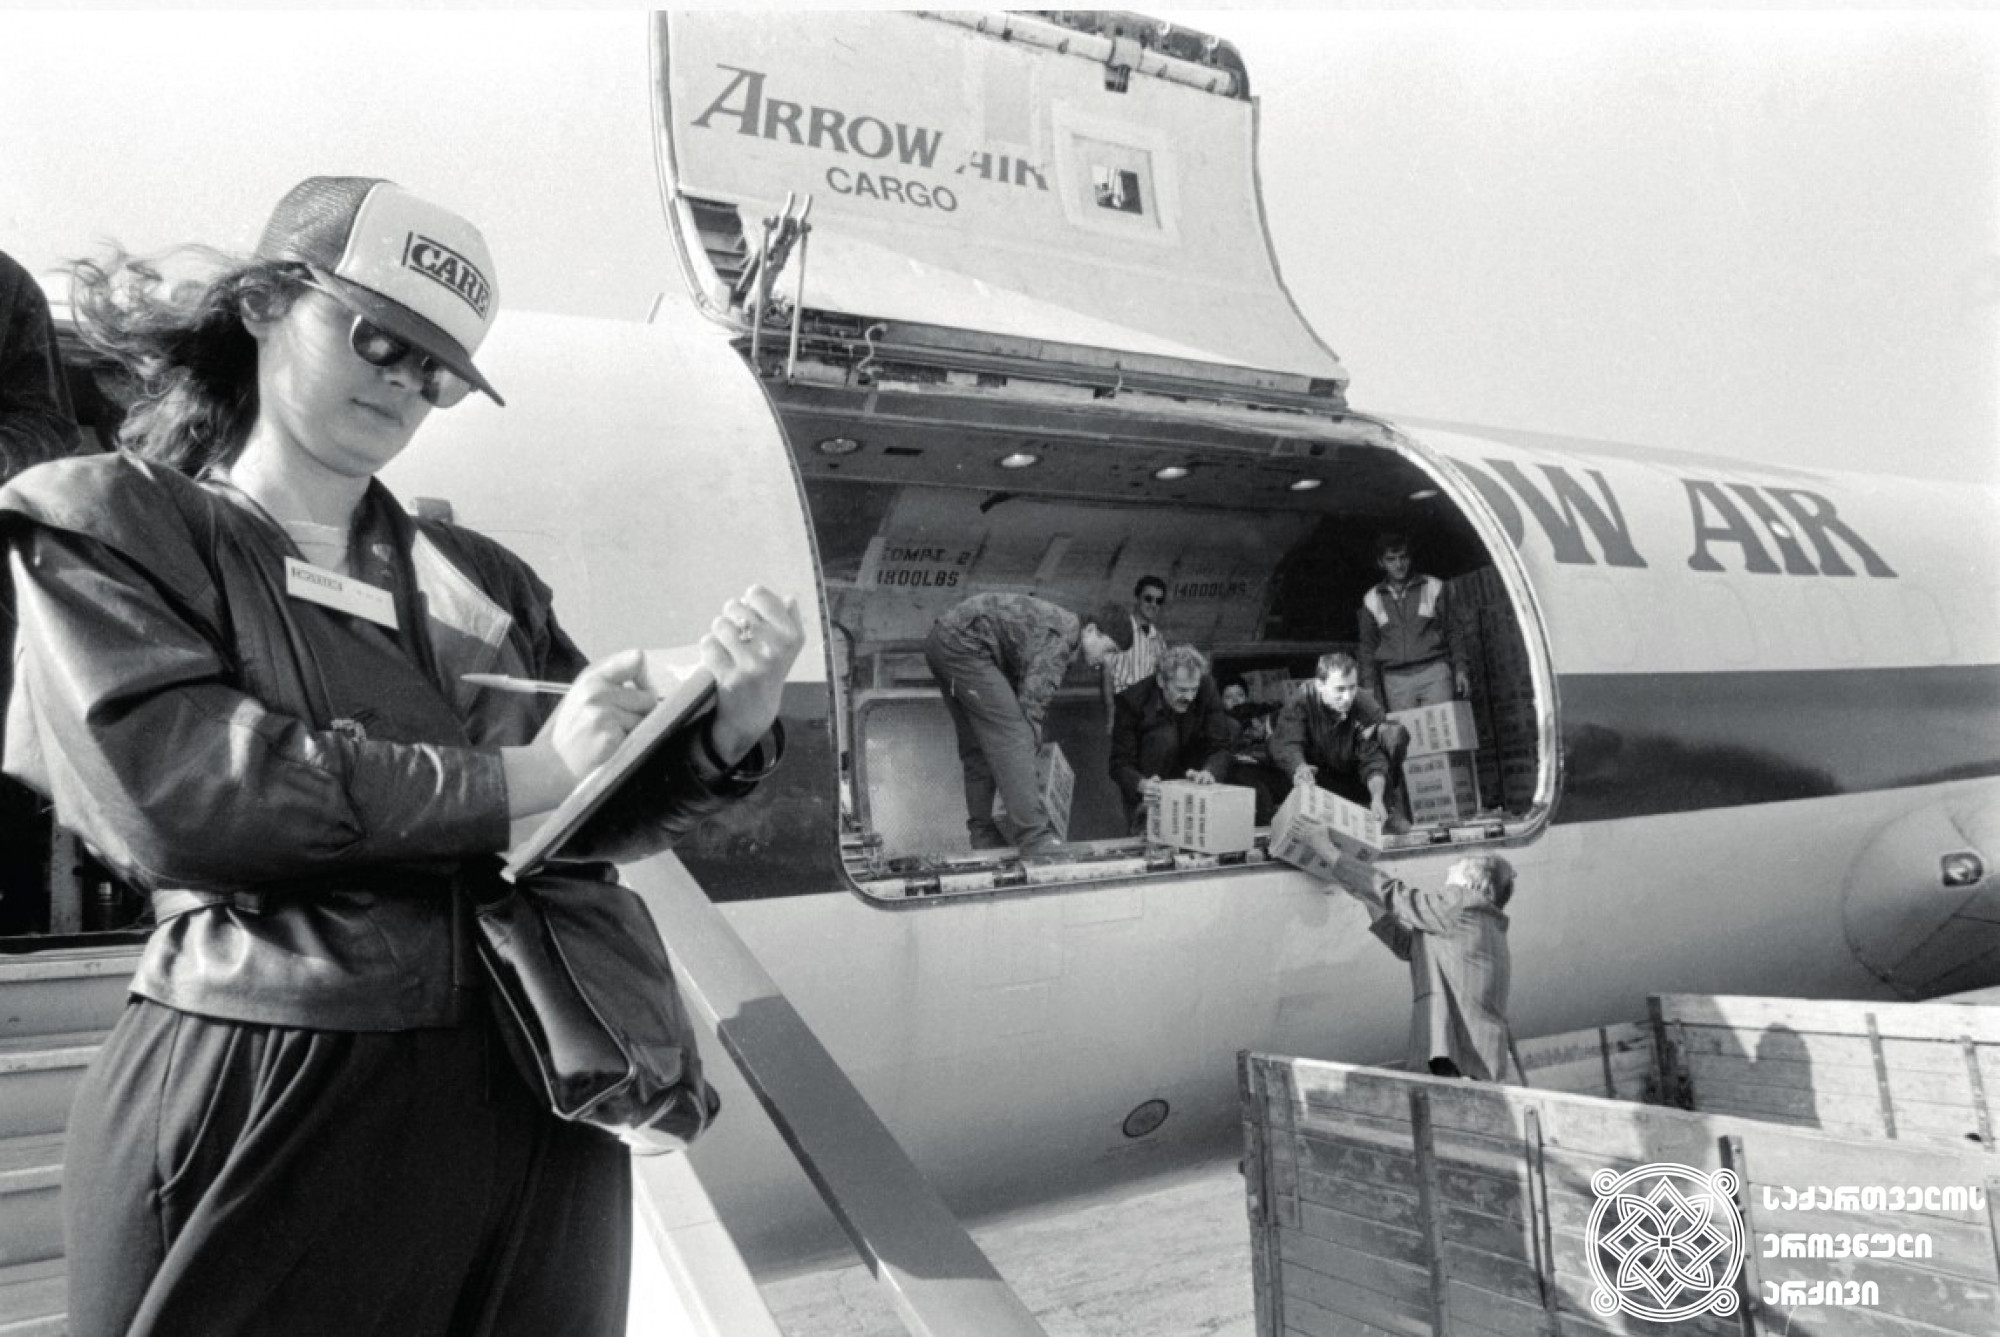 აშშ-ის მიერ საქართველოსთვის გაგზავნილი ჰუმანიტარული ტვირთი თბილისის აეროპორტში. <br>
1993 წელი.<br>
ვლადიმერ ვალიშვილის ფოტო.<br>
Humanitarian cargo, sent by United States to Georgia, at Tbilisi airport.<br> 
1993. <br>
Photo by Vladimer Valishvili.